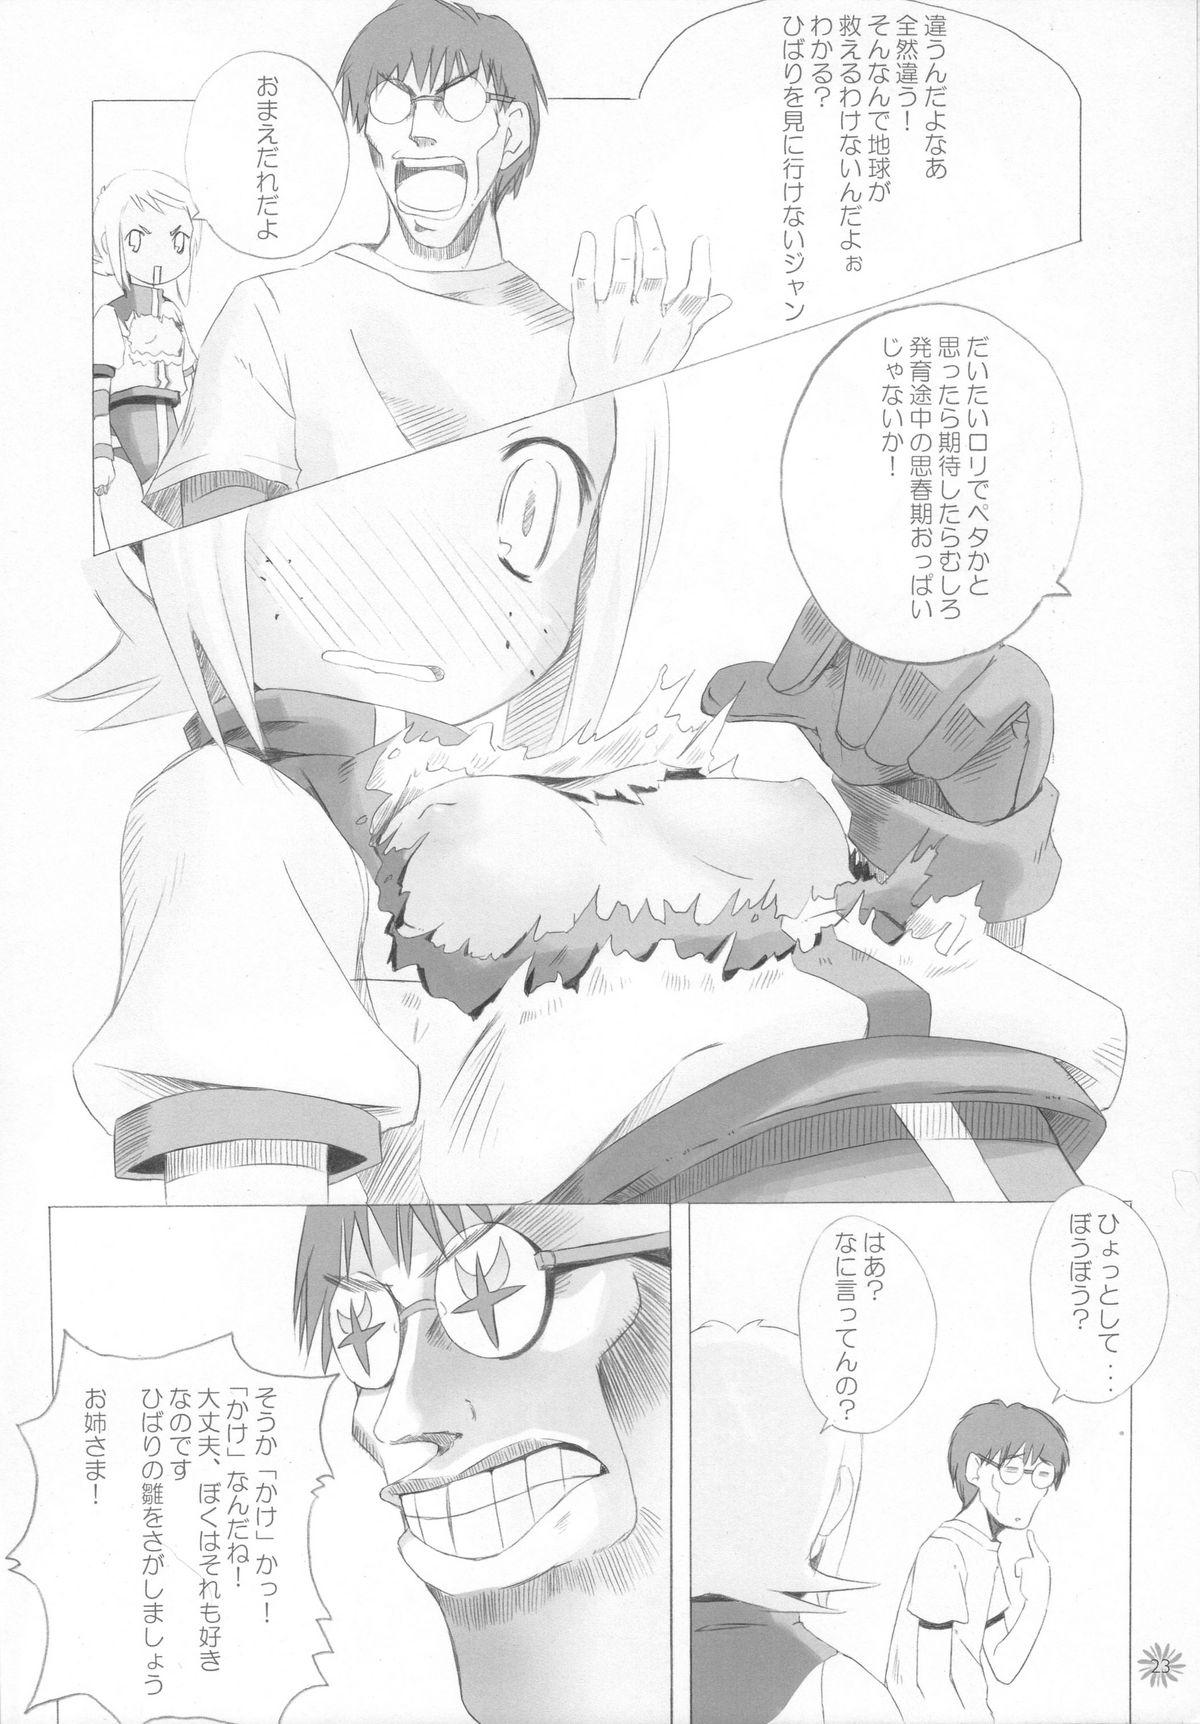 Sucks CAPTOR - Cardcaptor sakura Higurashi no naku koro ni Diebuster Escort - Page 9